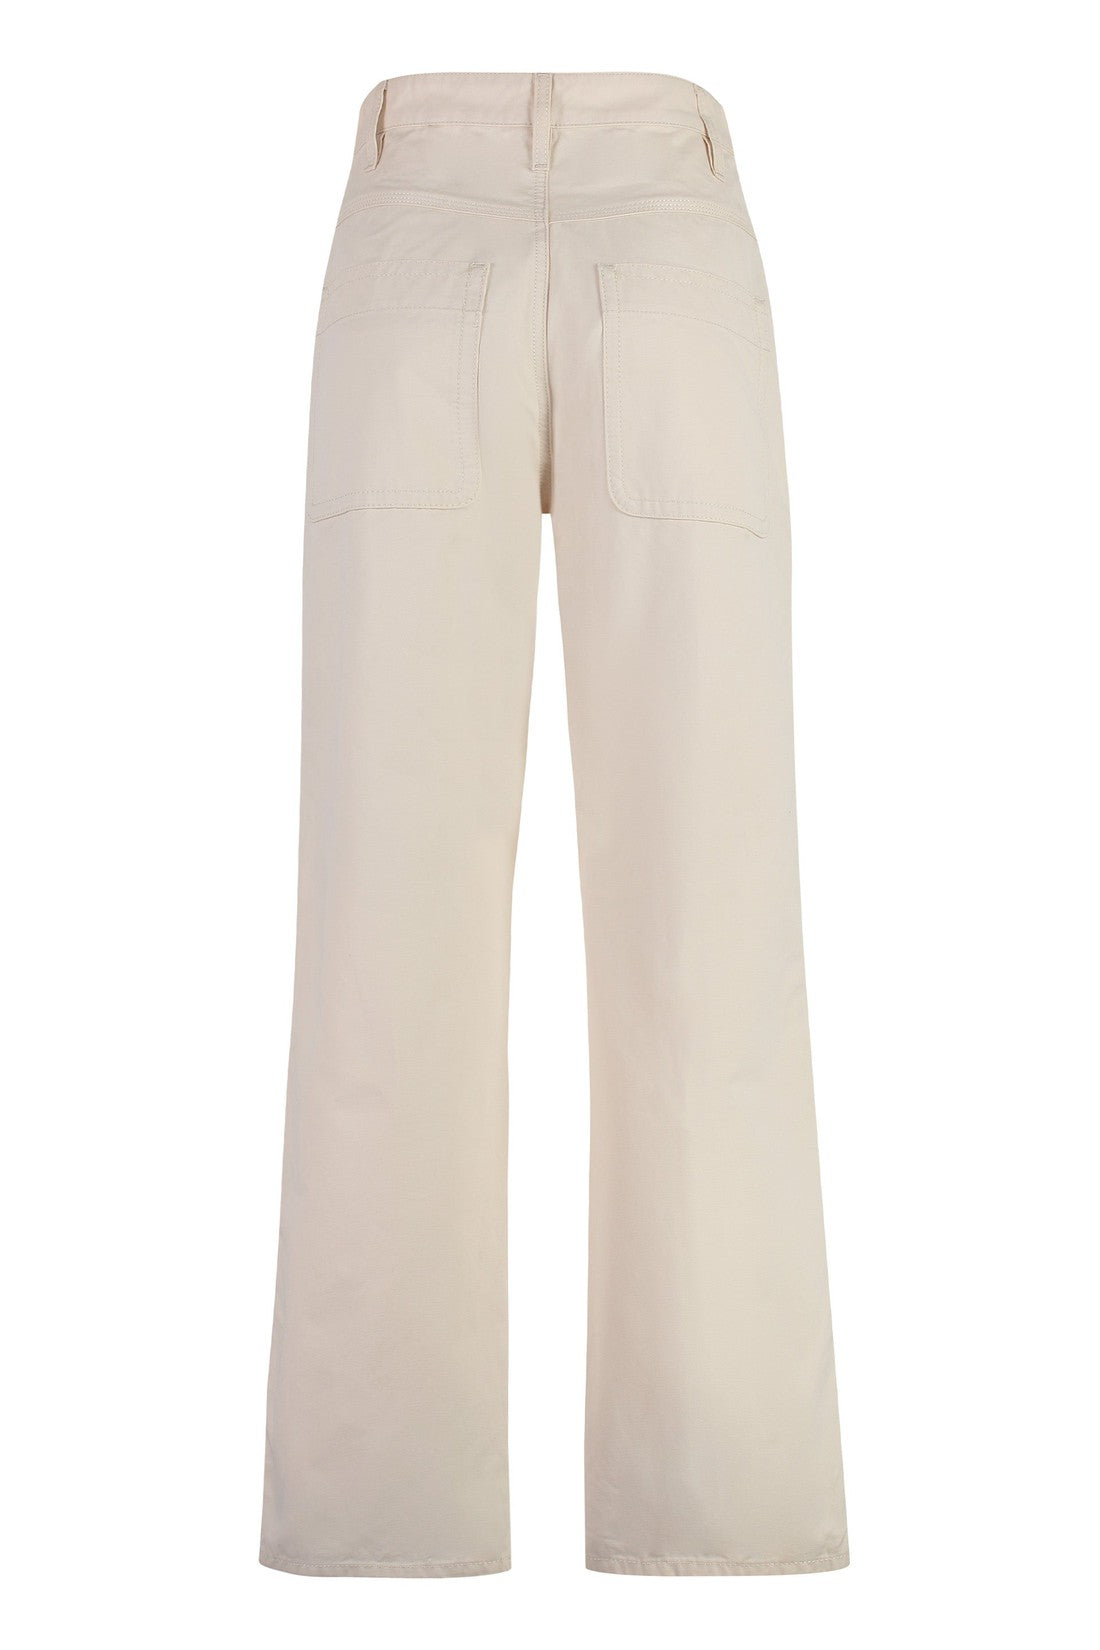 Marant étoile-OUTLET-SALE-Driane cotton trousers-ARCHIVIST